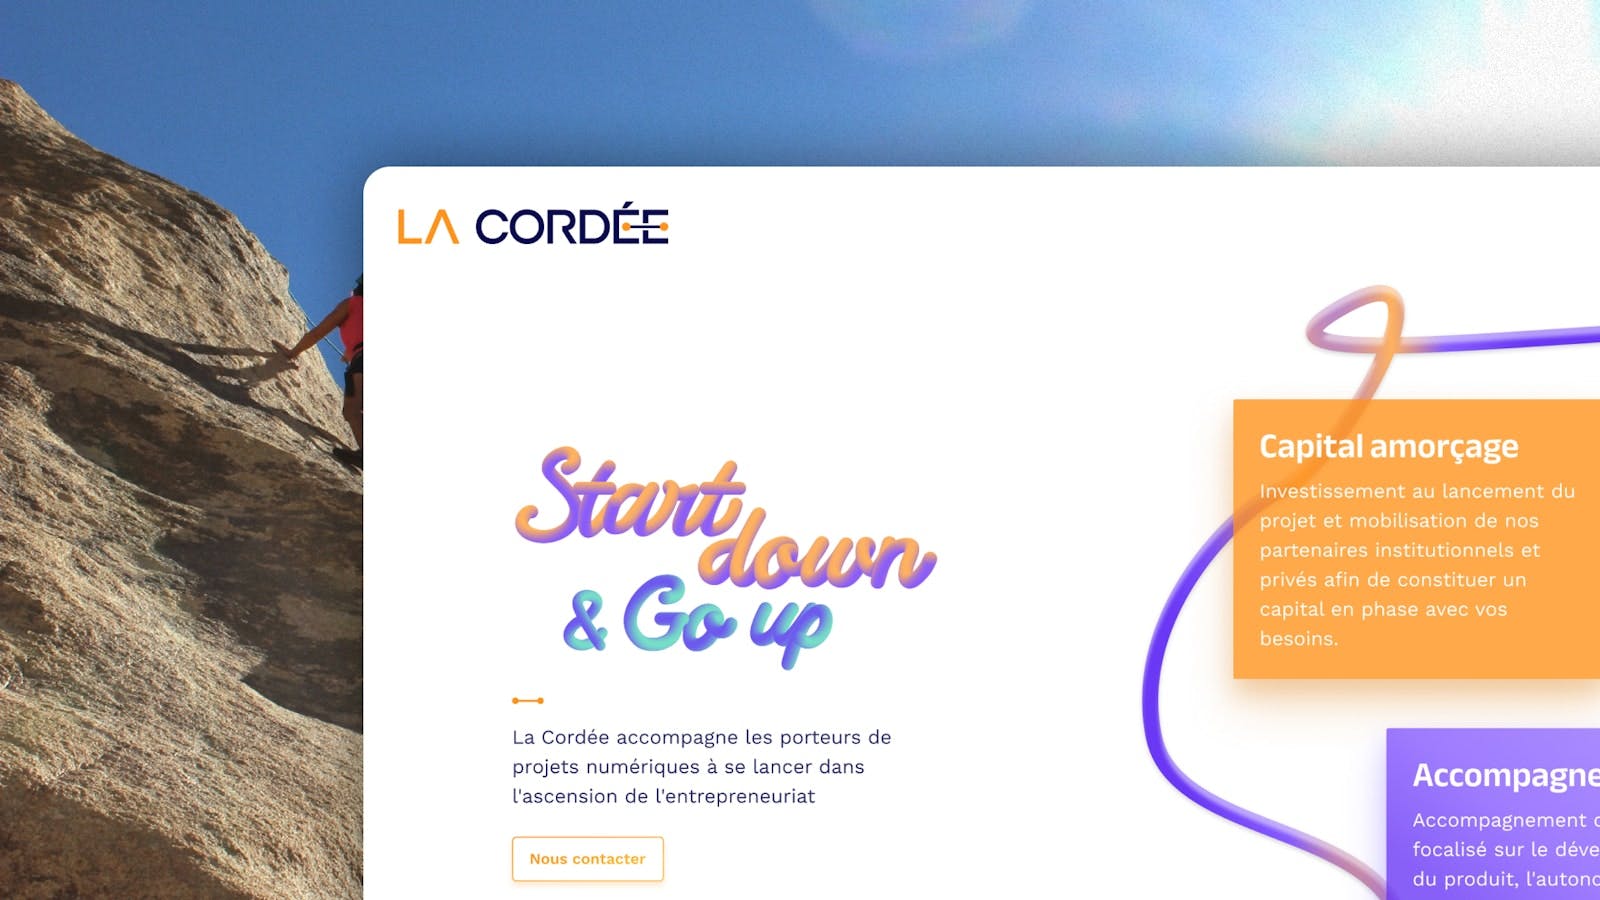 Aperçu du site vitrine La Cordée sur mobile avec une personne qui escalade une falaise en image d'arrière plan.